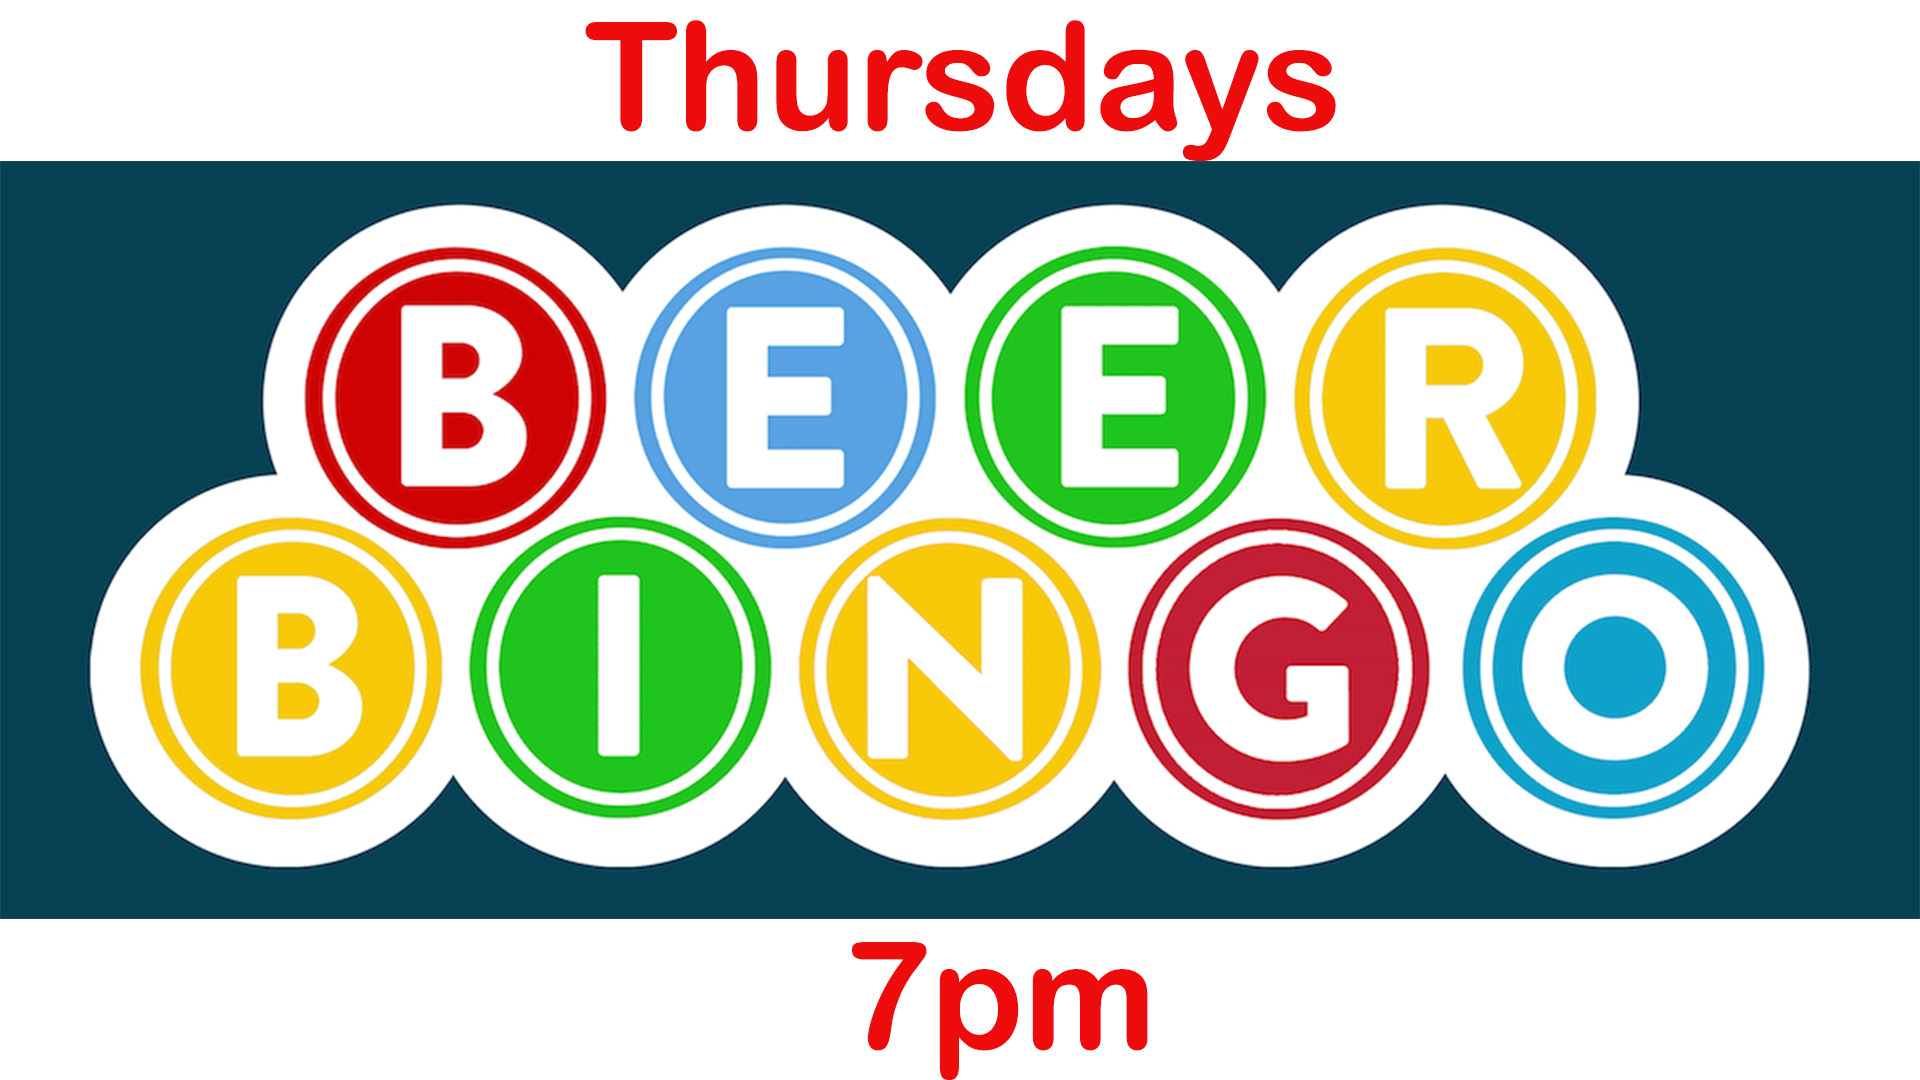 beer bingo logo